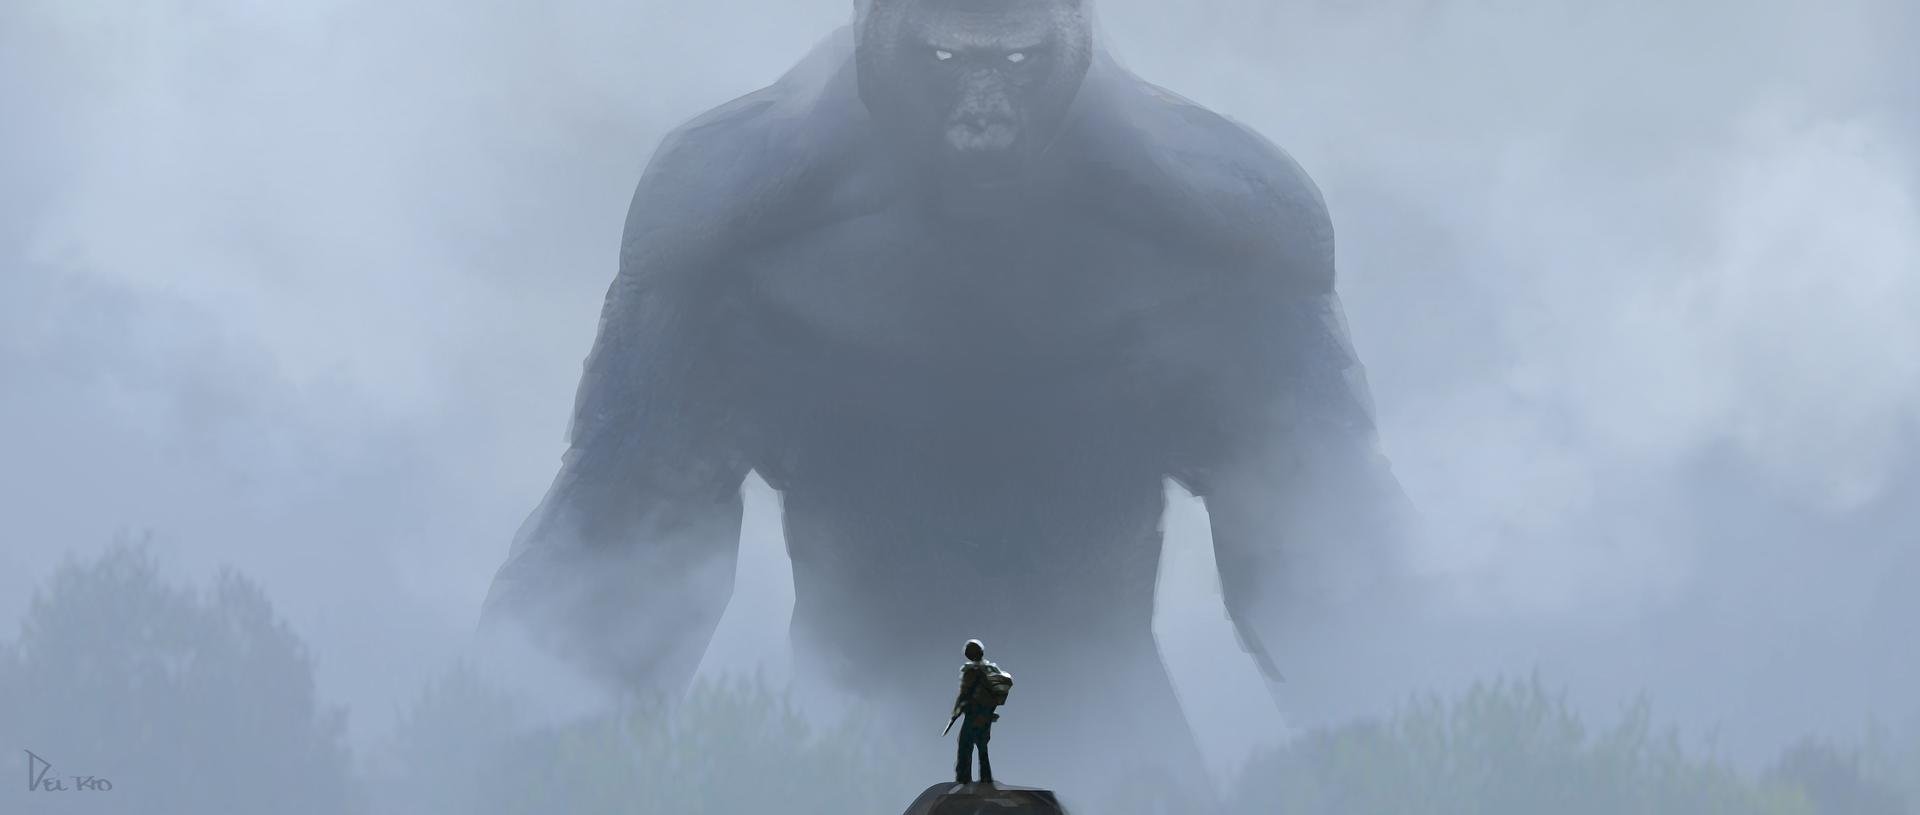 Kong: A Ilha da Caveira (Legendado) - Movies on Google Play